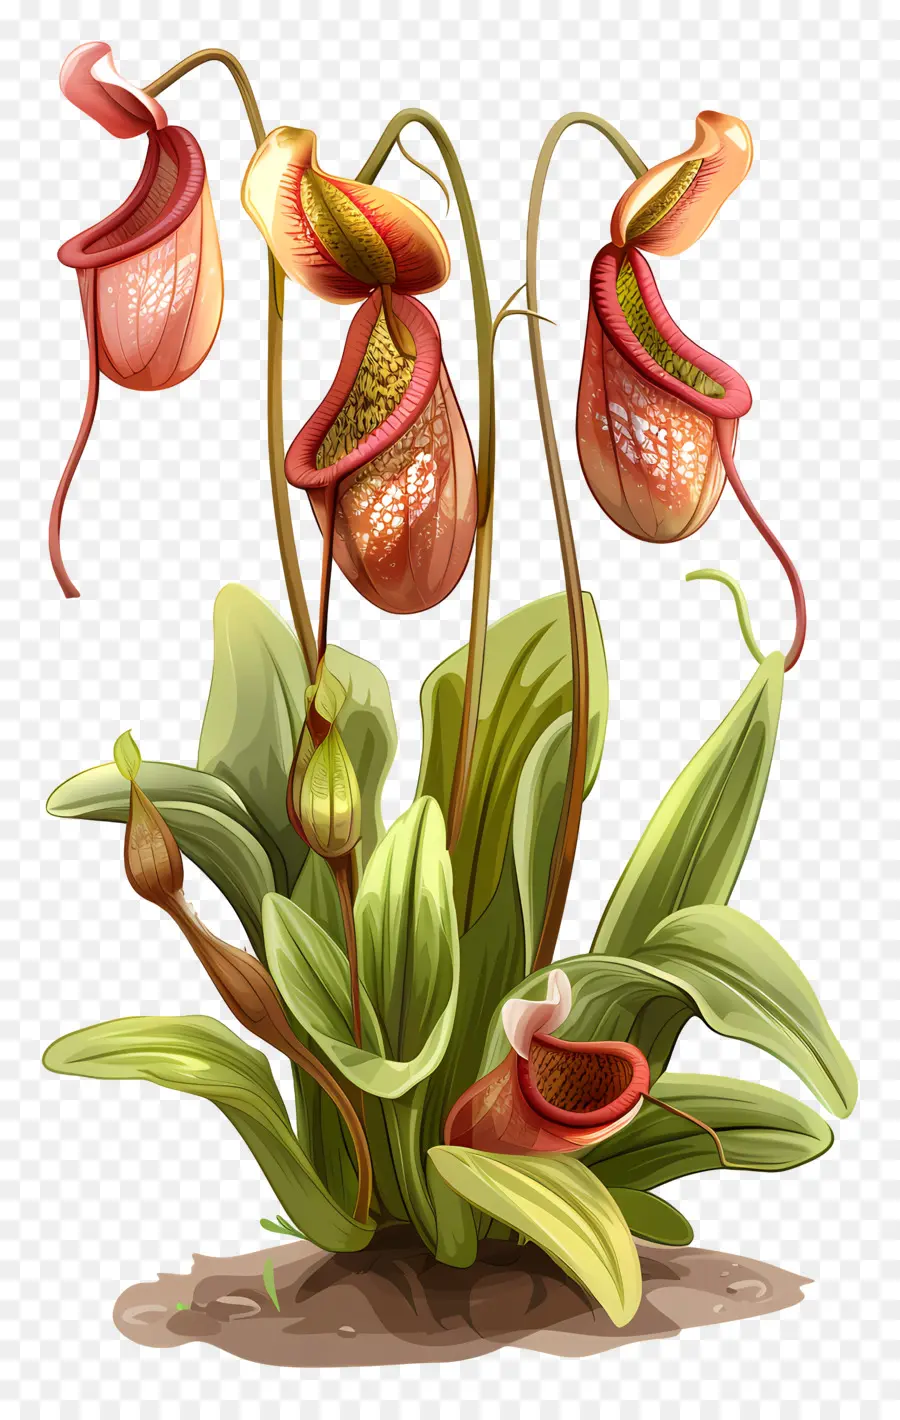 Tropenkrugpflanze Cobra Lily fleischfressende Pflanzenkrugpflanze Kapuze -Blätter - Kobra -Lilie mit roten Blüten, wassergepackter Boden